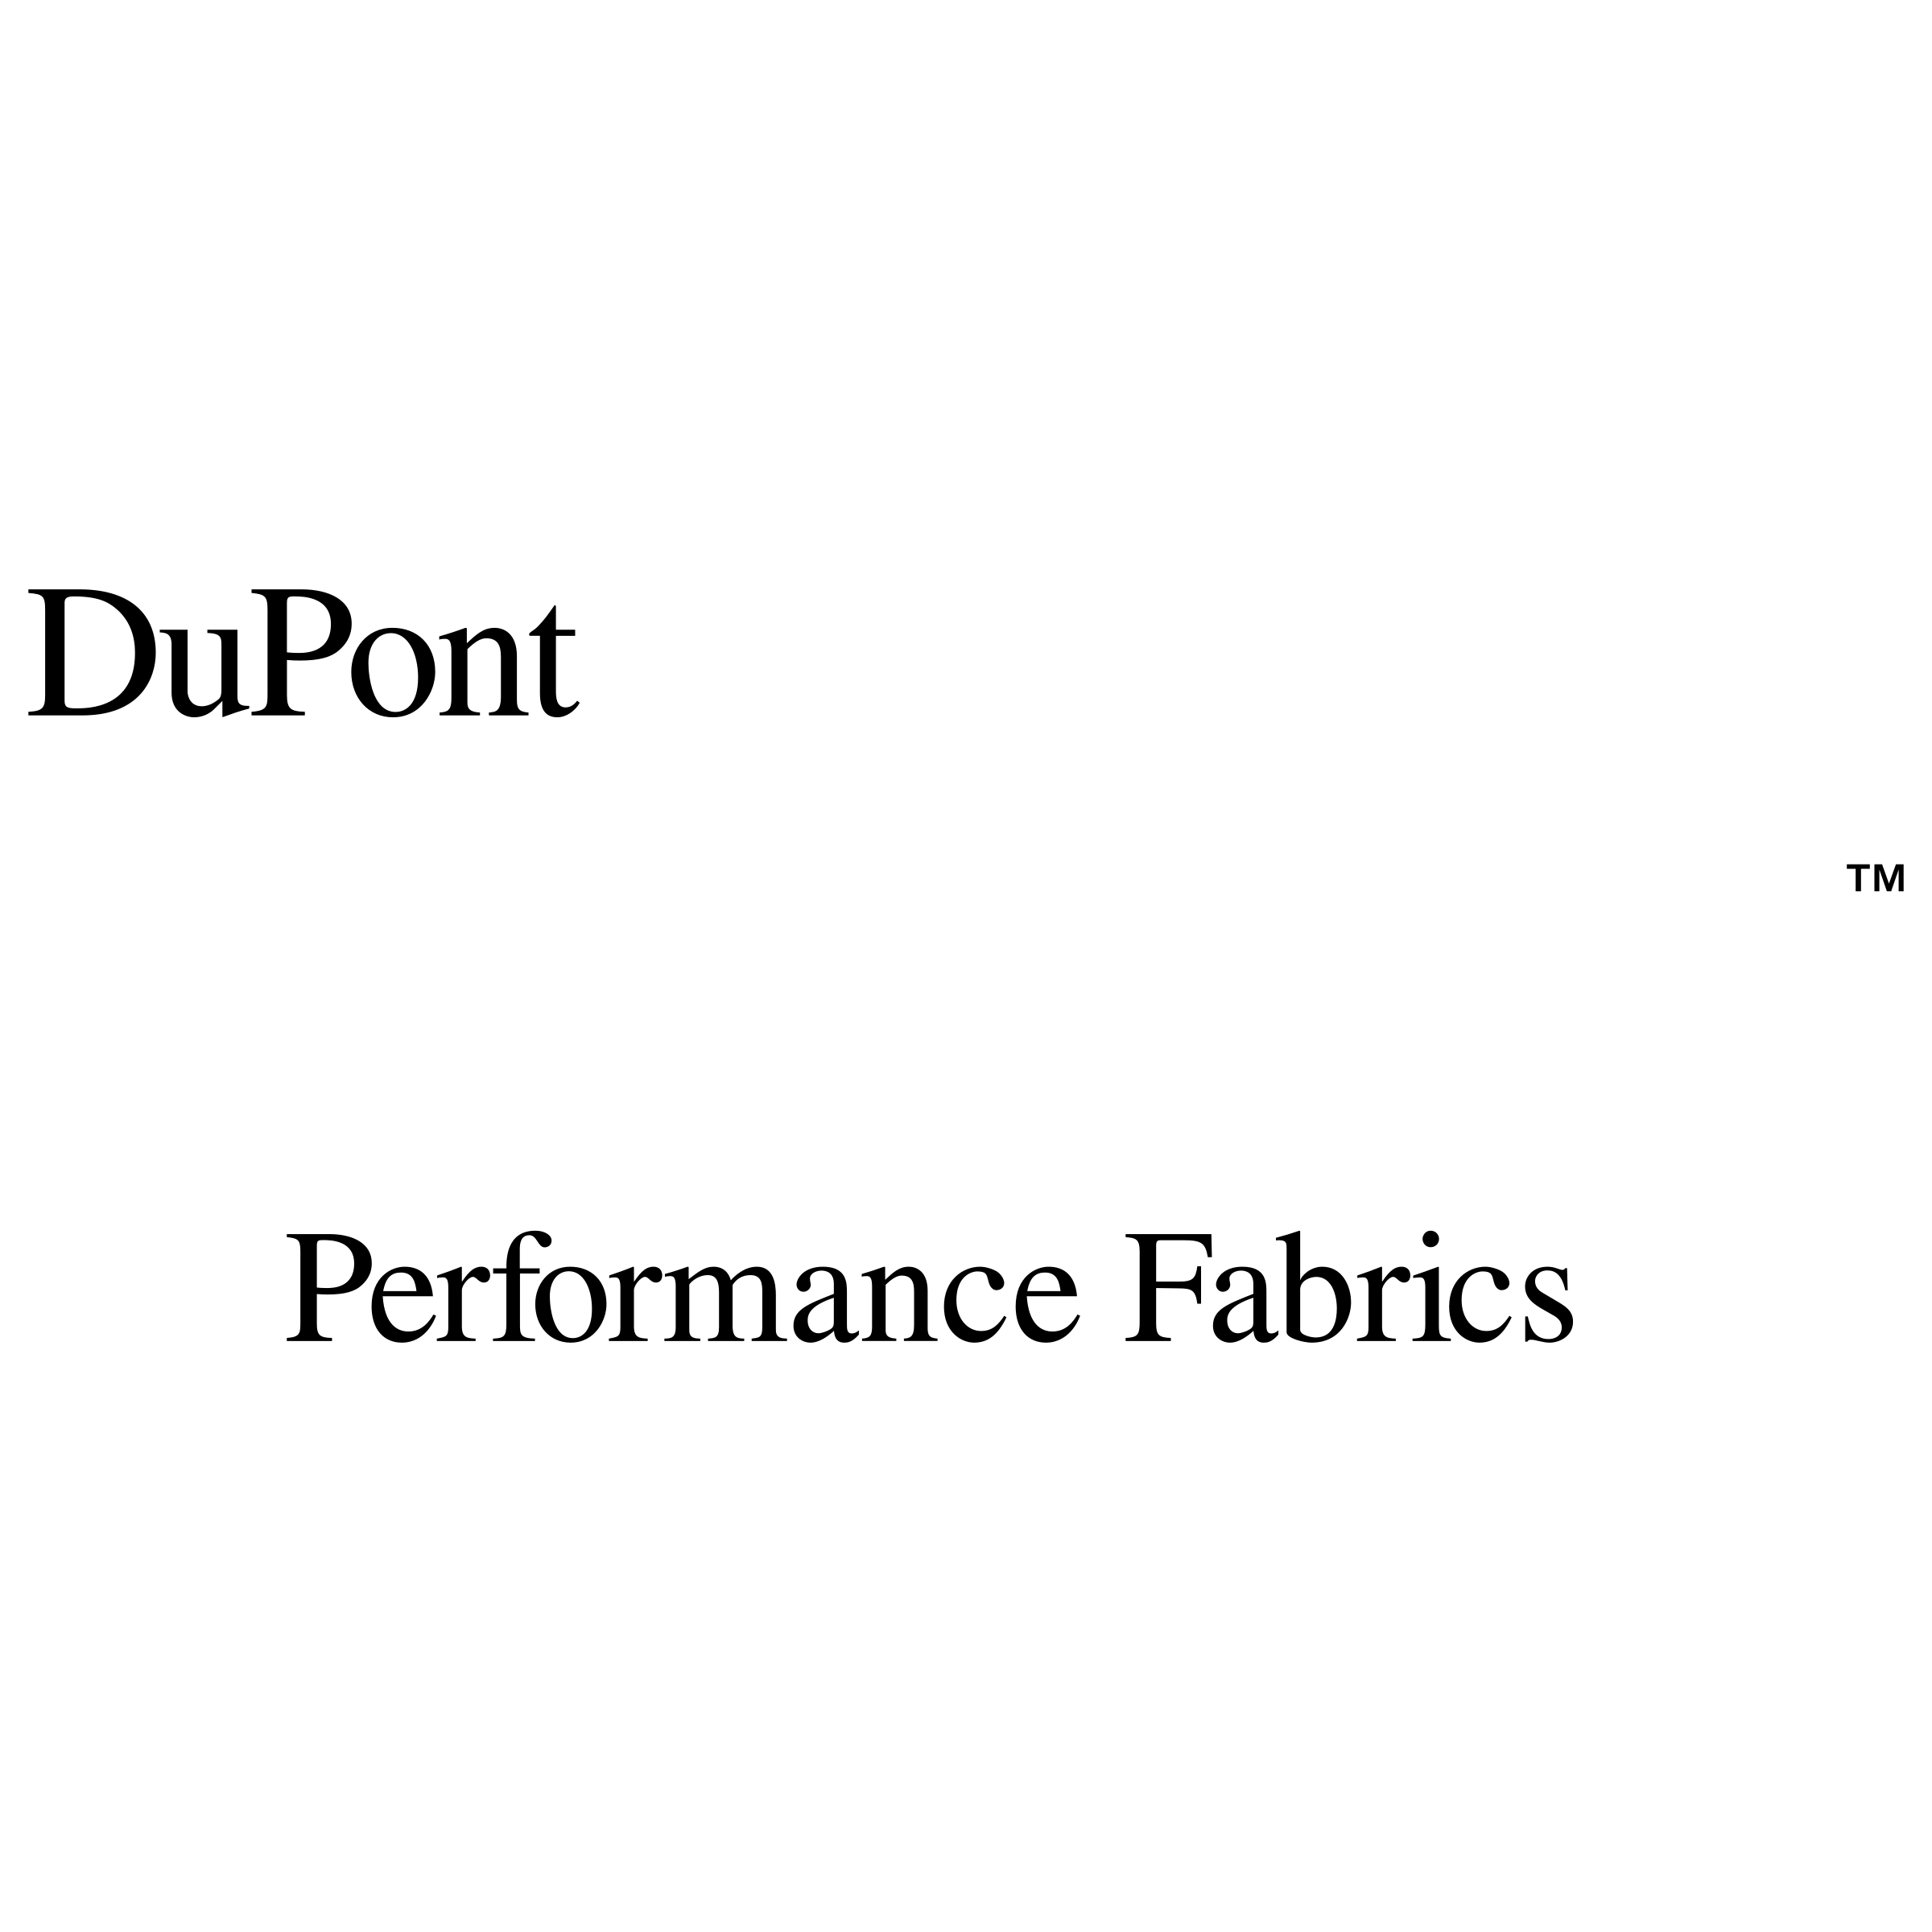 Coolmax Logo - Du Pont CoolMax Logo PNG Transparent & SVG Vector